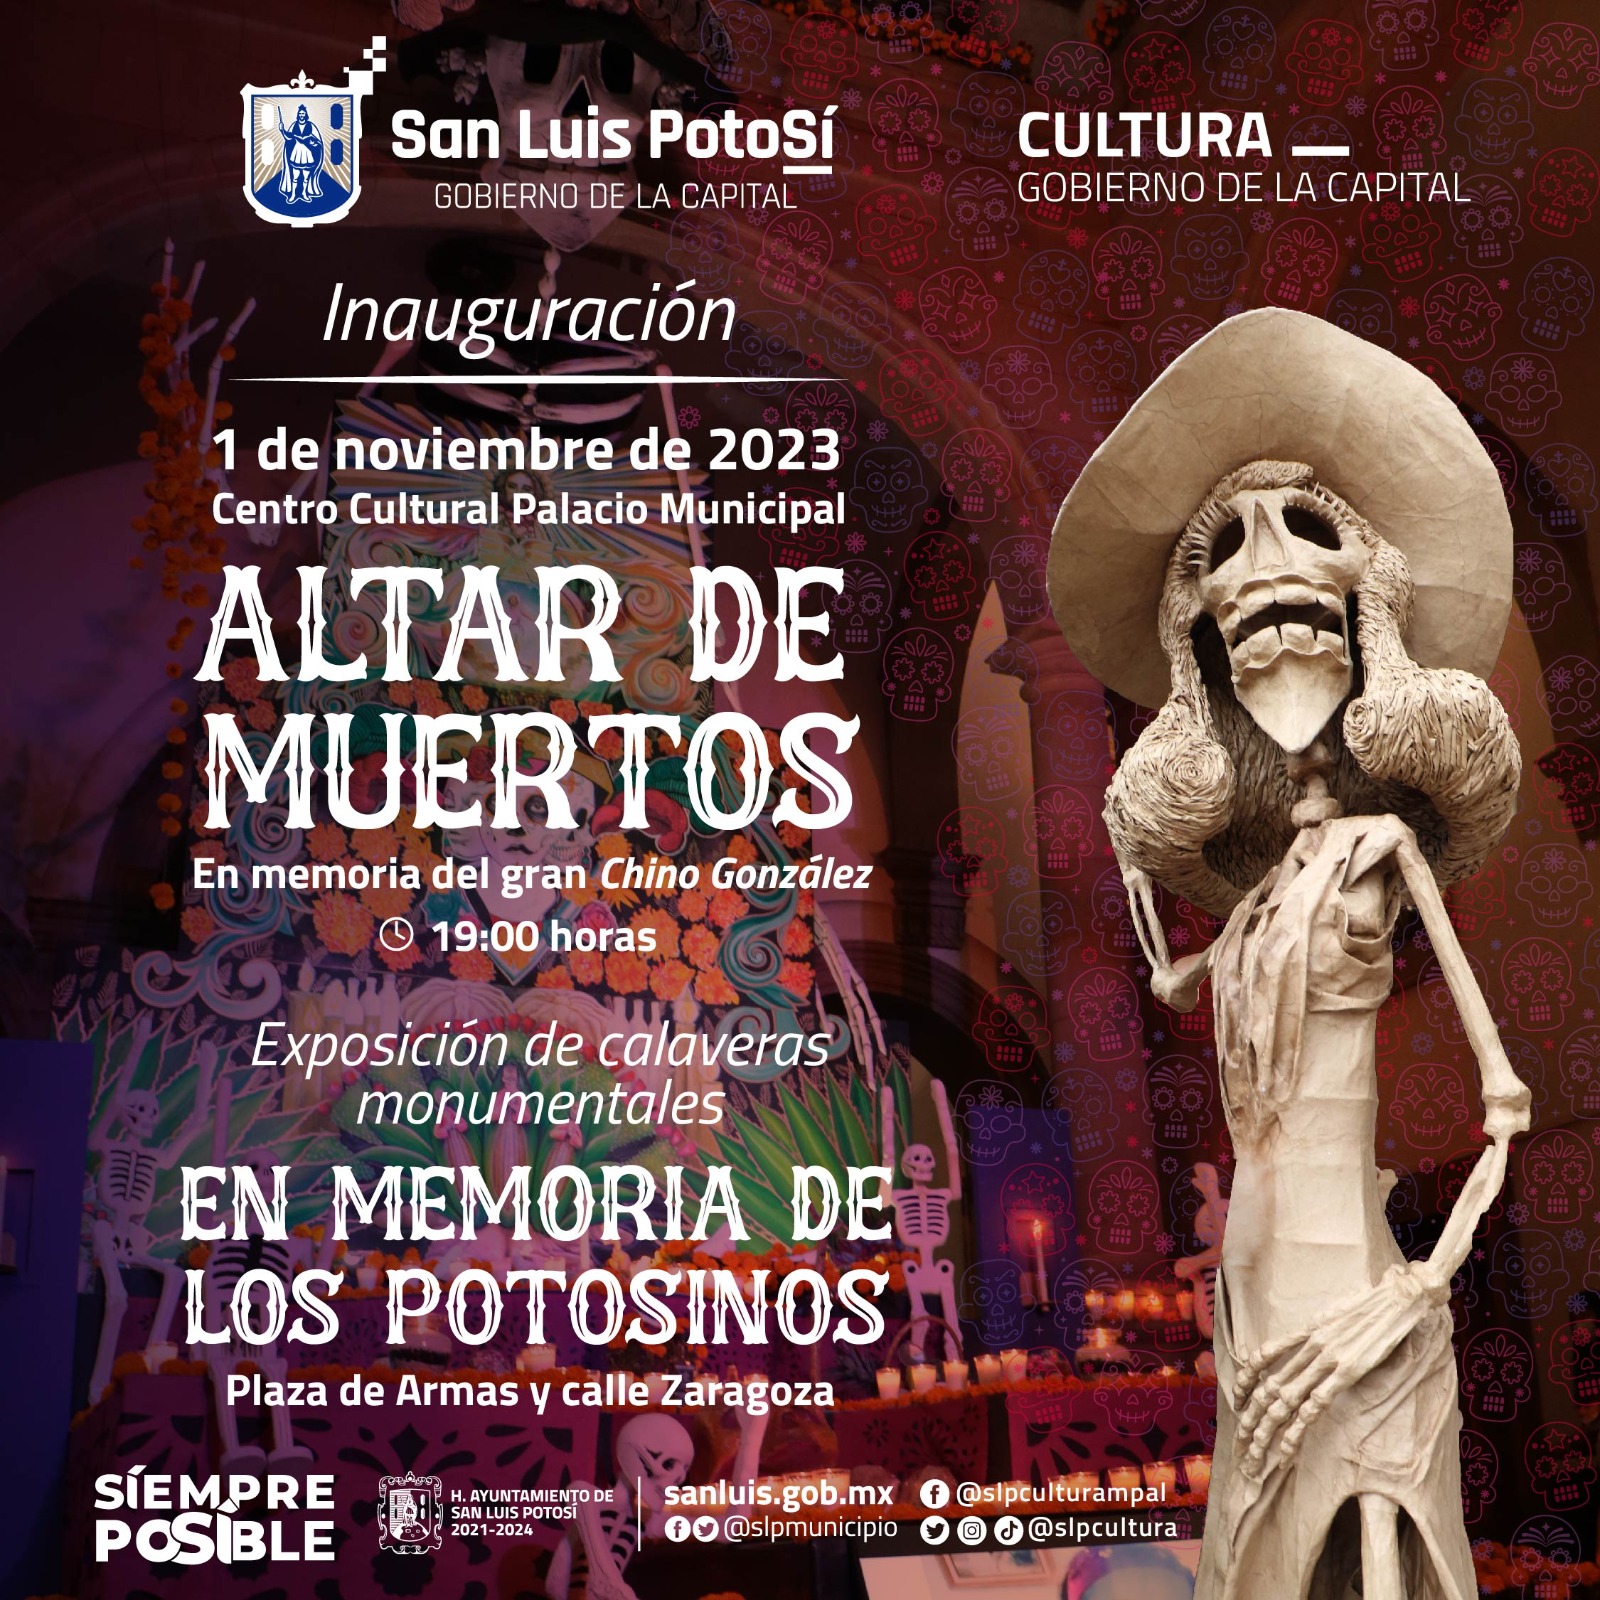 Informó que es toda una tradición el Altar de Muertos en el interior de Palacio Municipal, dedicado a personajes de la historia mexicana